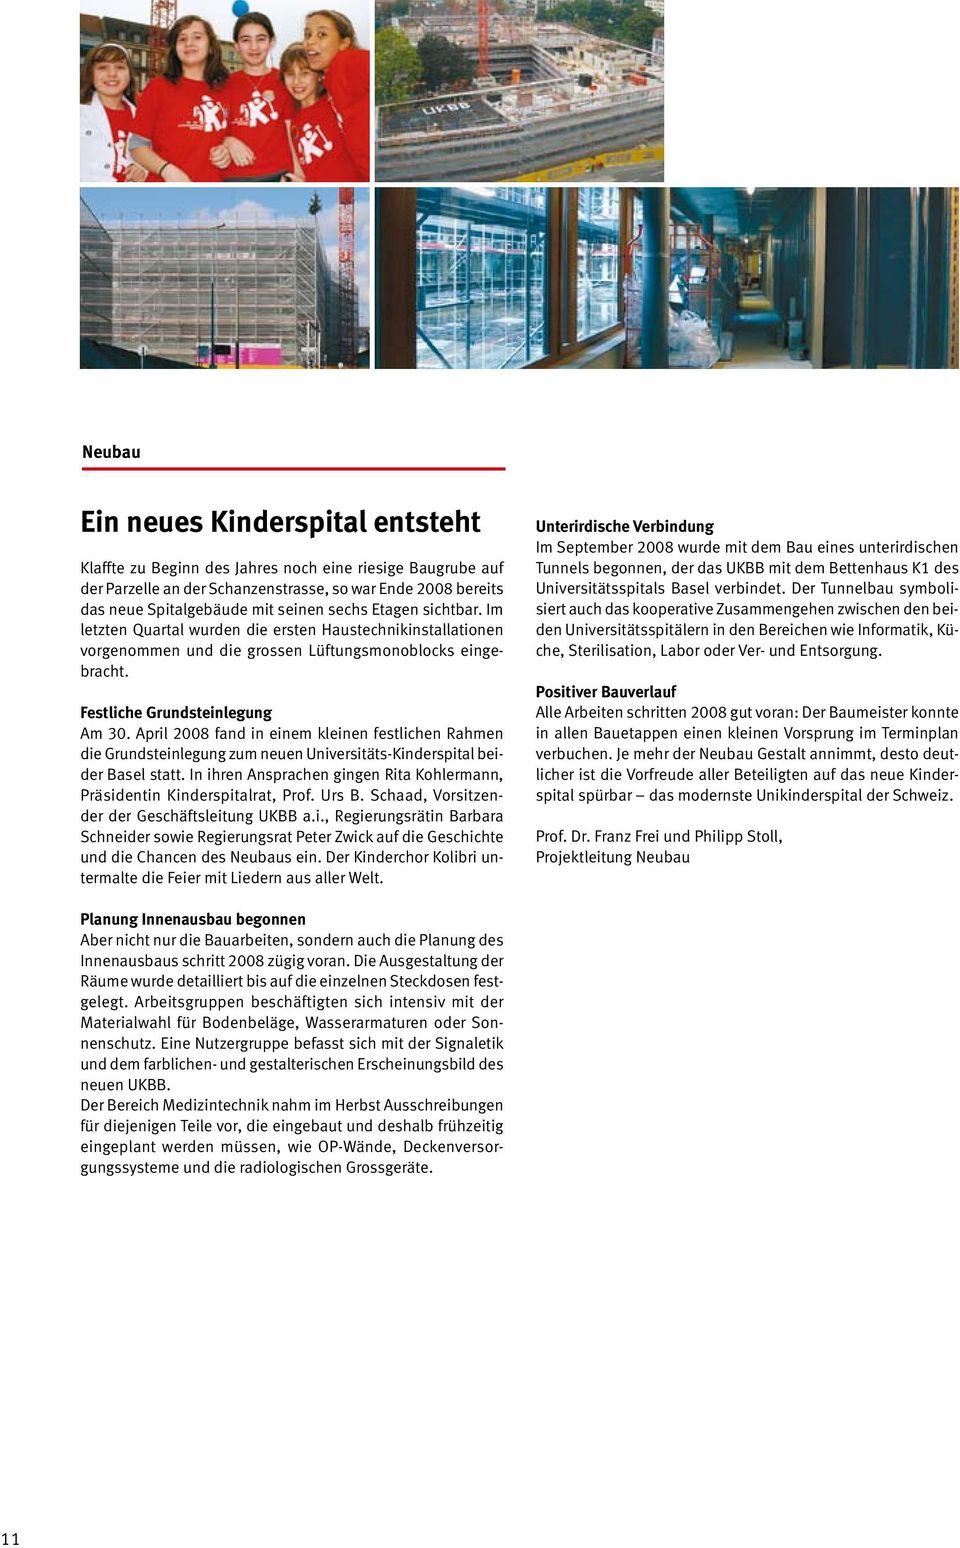 April 2008 fand in einem kleinen festlichen Rahmen die Grundsteinlegung zum neuen Universitäts-Kinderspital beider Basel statt.